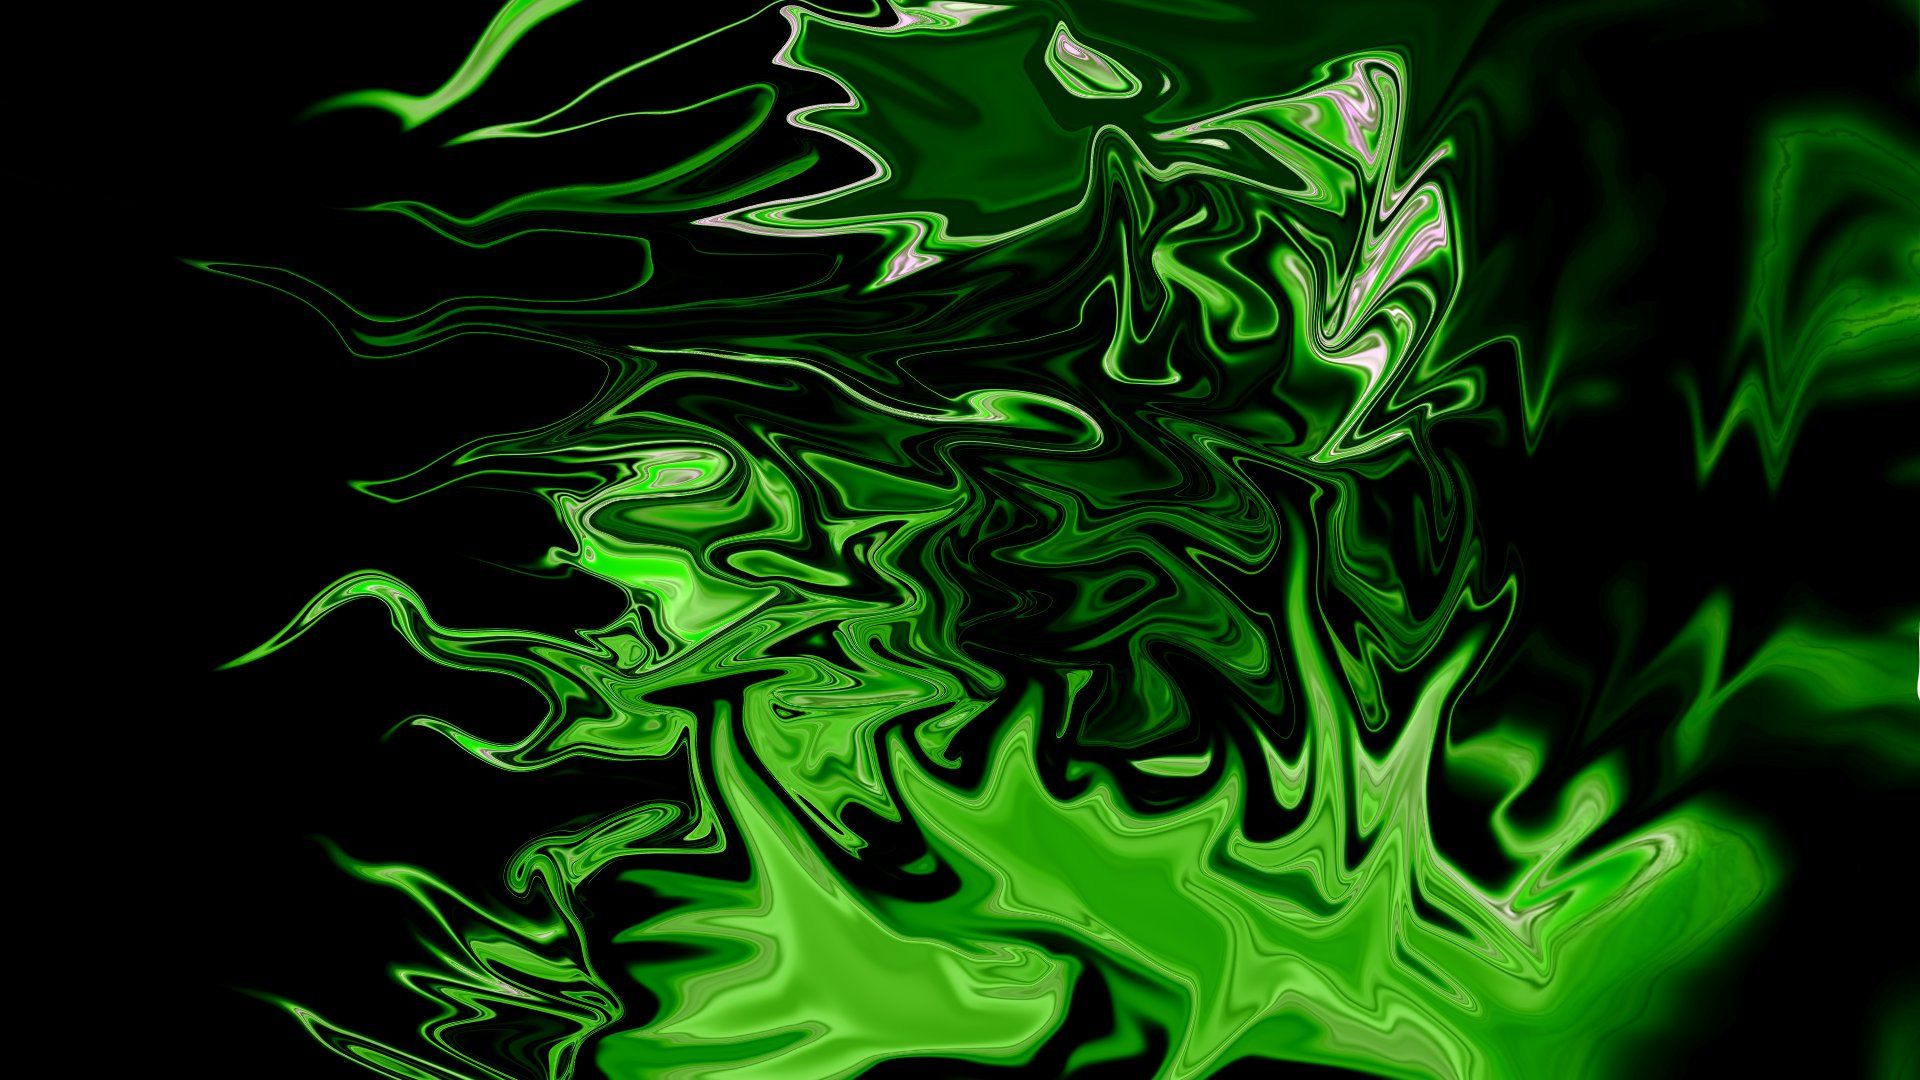 Neon Green Aesthetic Desktop Wallpapers - Top Free Neon Green